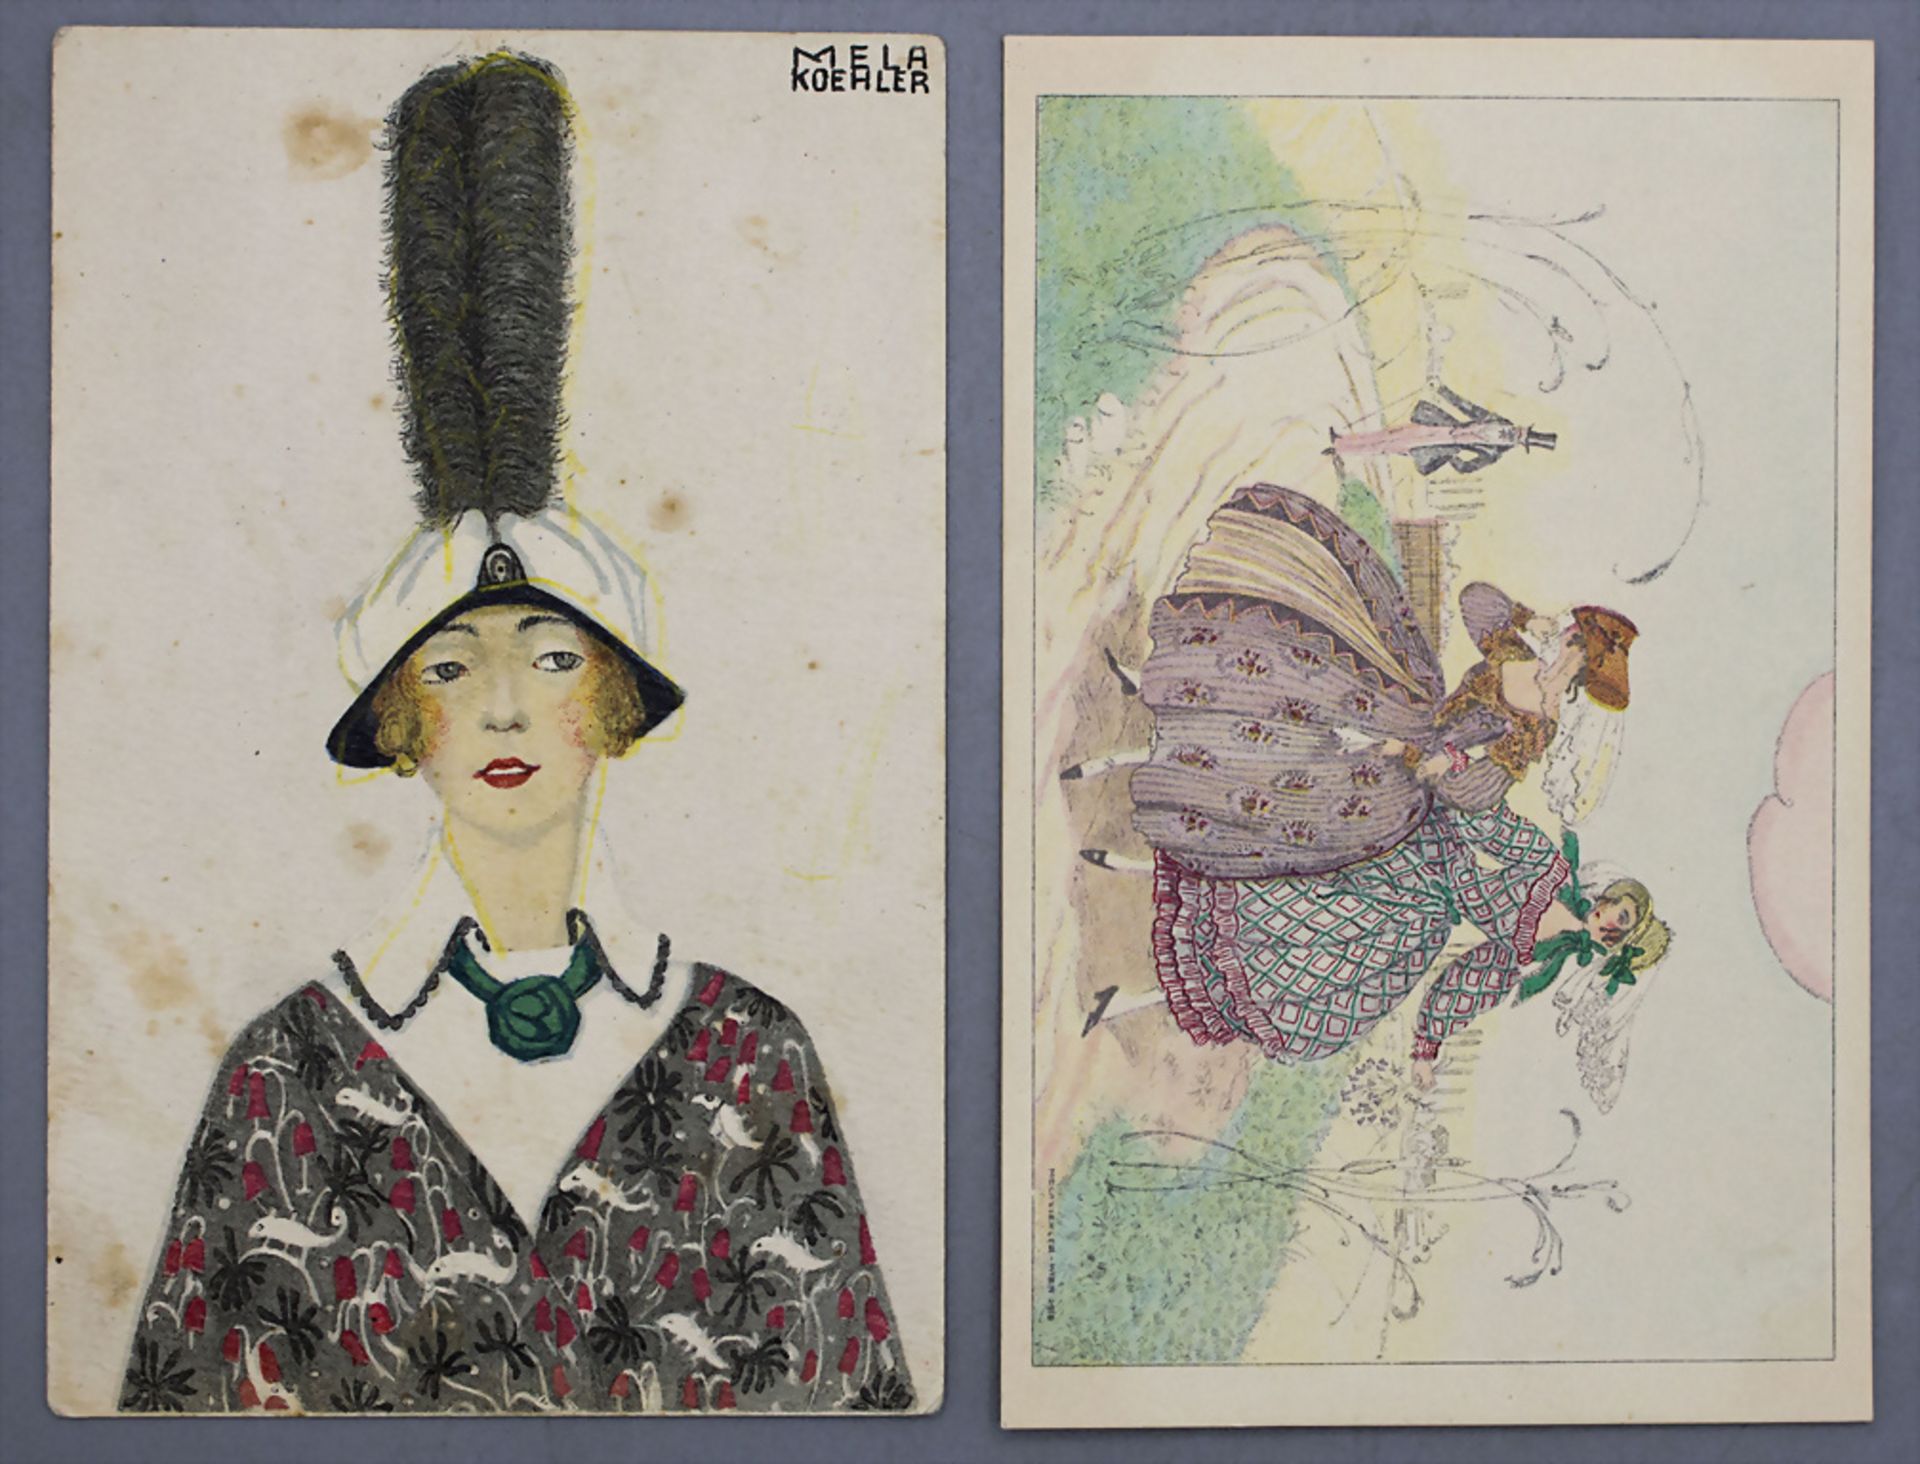 2 Jugendstil Künstlerkarten / 2 Art Nouveau artist postcards, Mela Koehler, Wien, um 1900